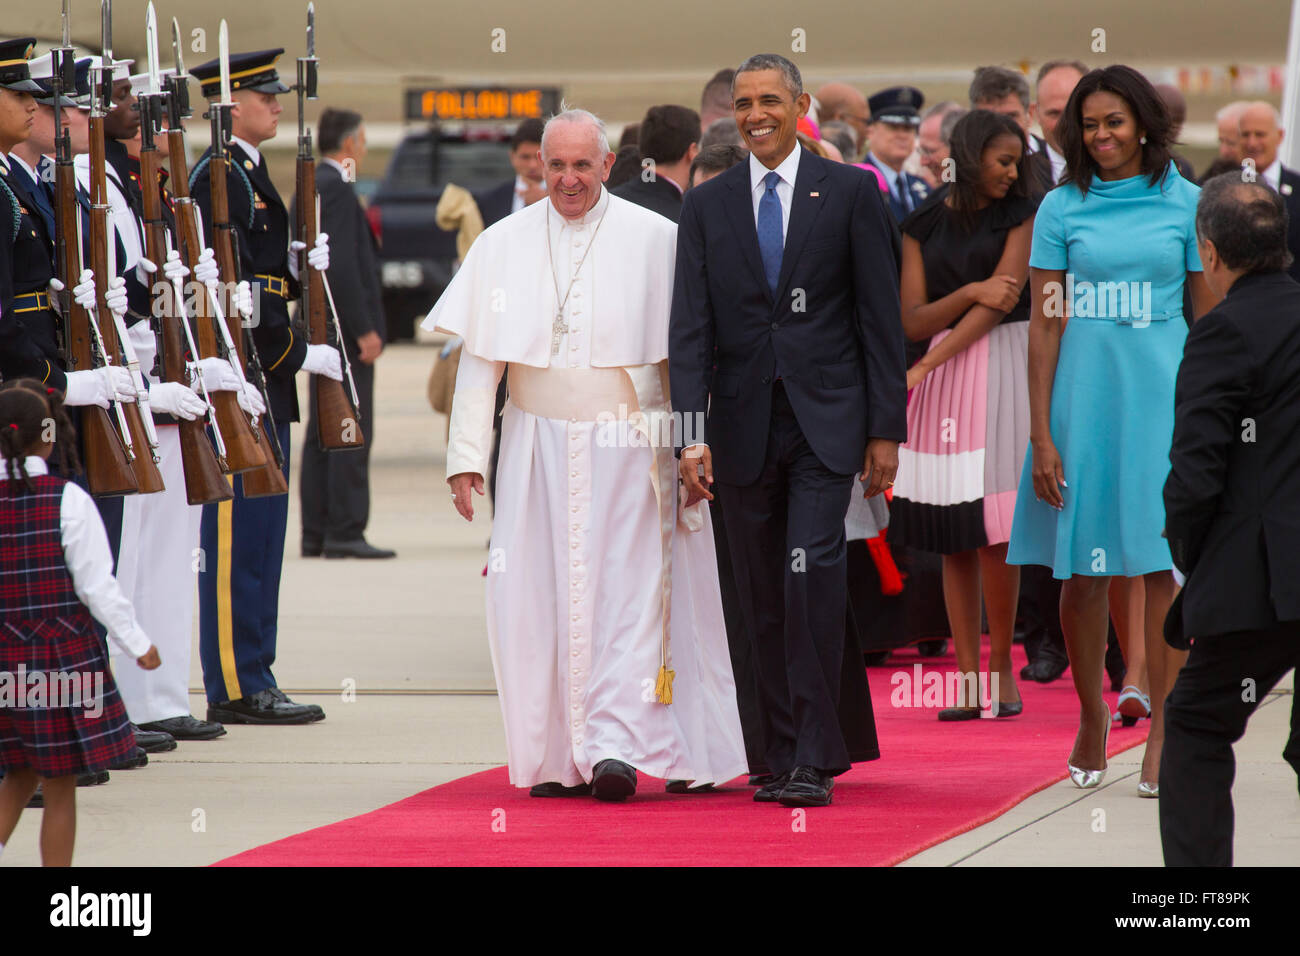 Le Pape arrive à Joint Base Andrews près de Washington D.C. et marche sur le tapis rouge le président Obama alors qu'il commence sa tournée de trois villes des États-Unis. Photo de James Tourtellotte. Banque D'Images